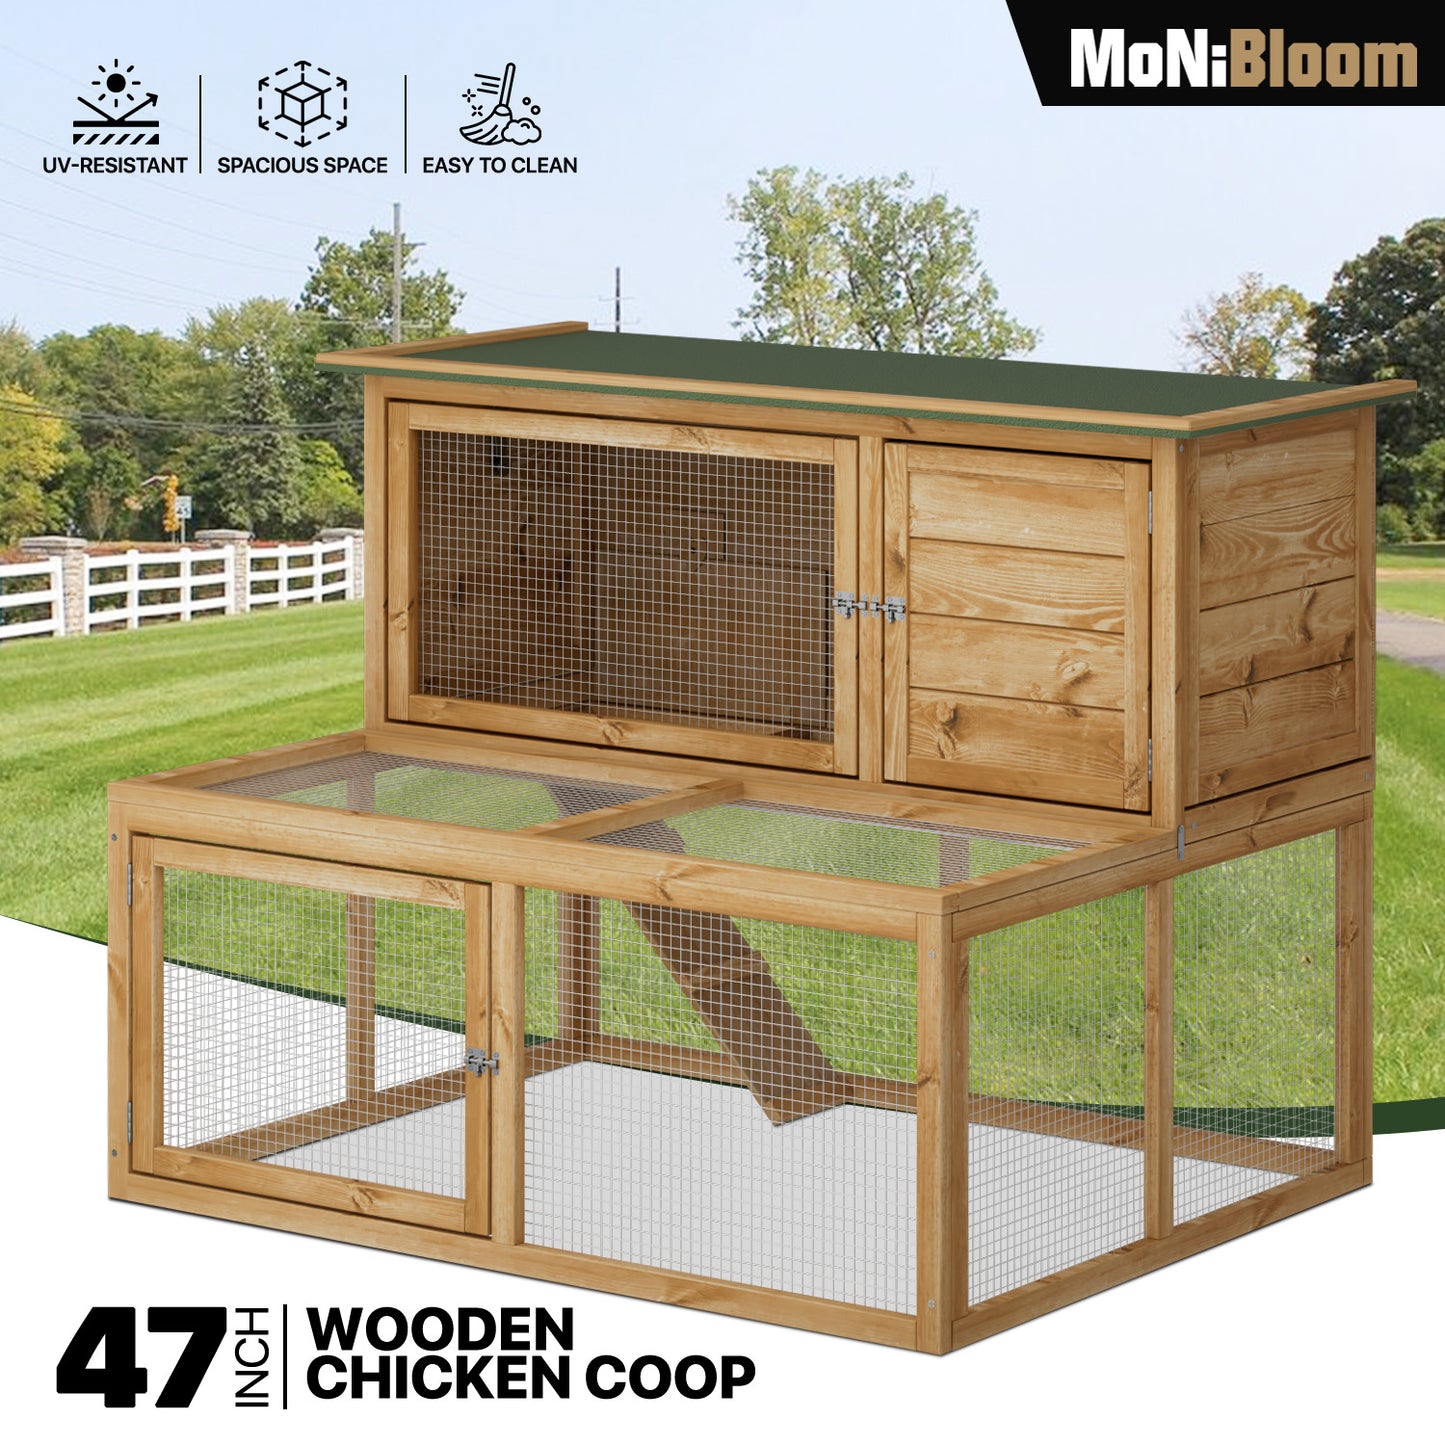 Wooden 2-Tier Chicken Coops Hutch